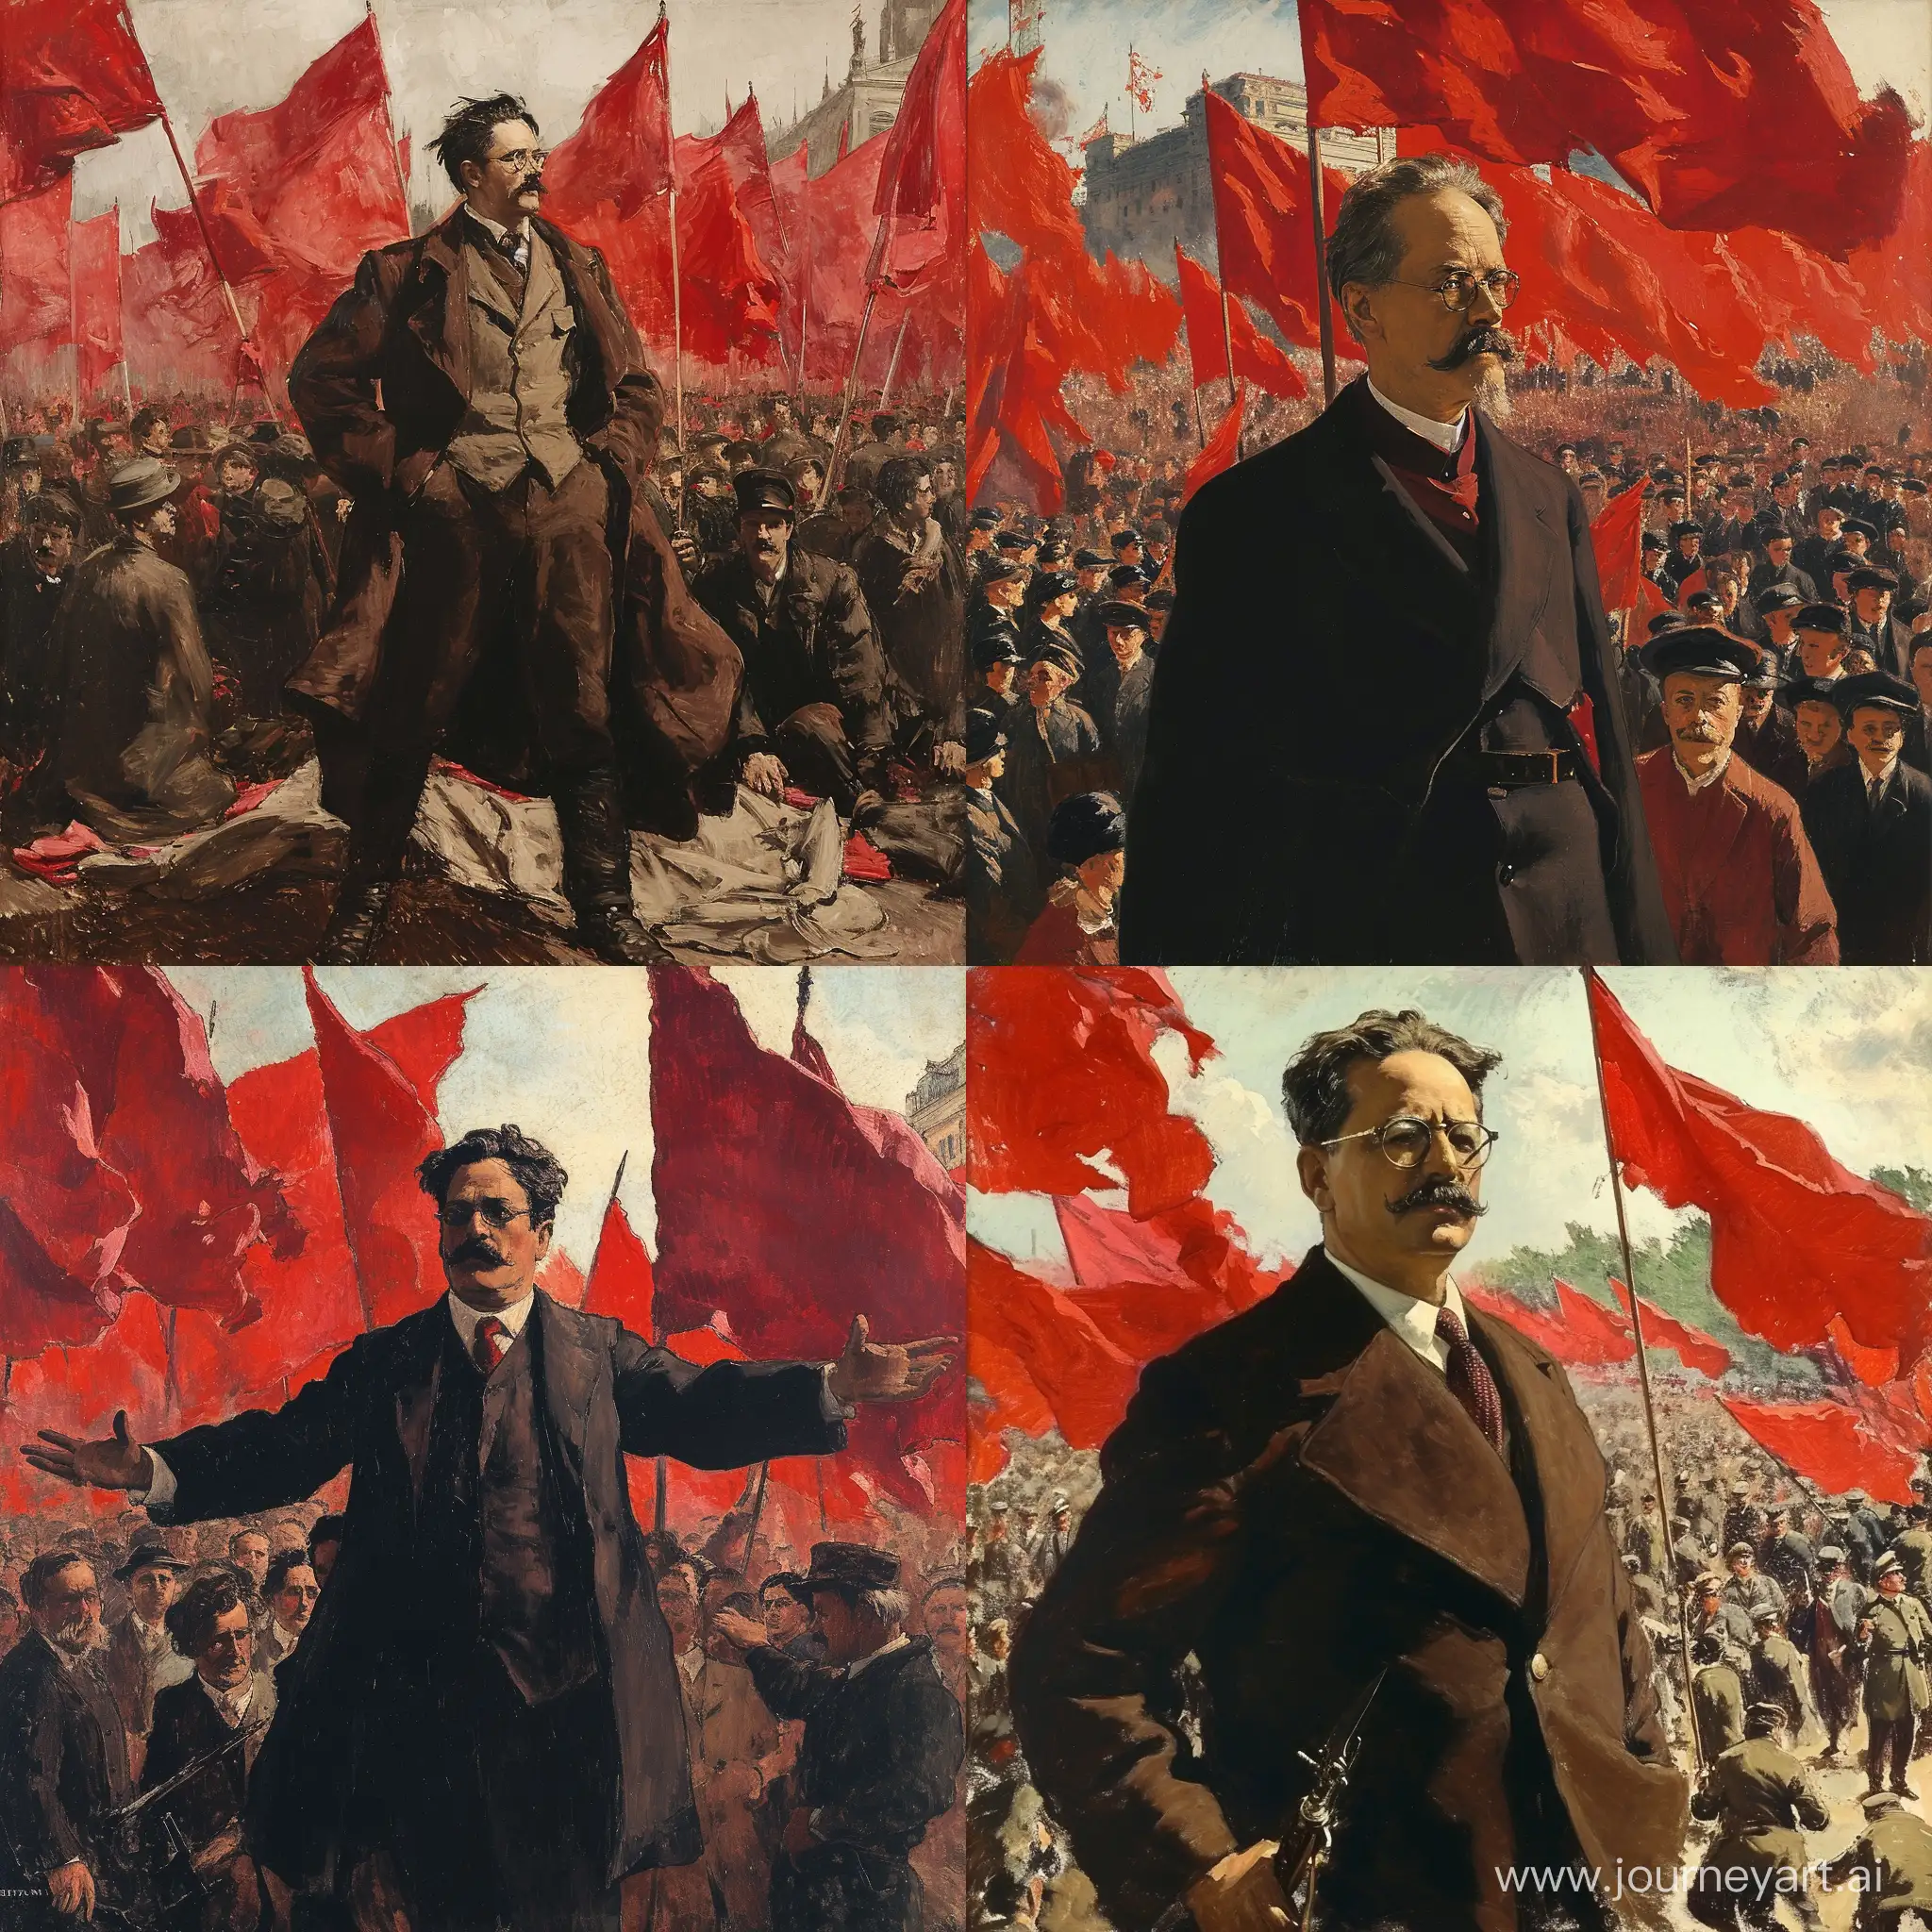 Лев Троцкий, агитирует людей, вокруг красные флаги и большая толпа. 